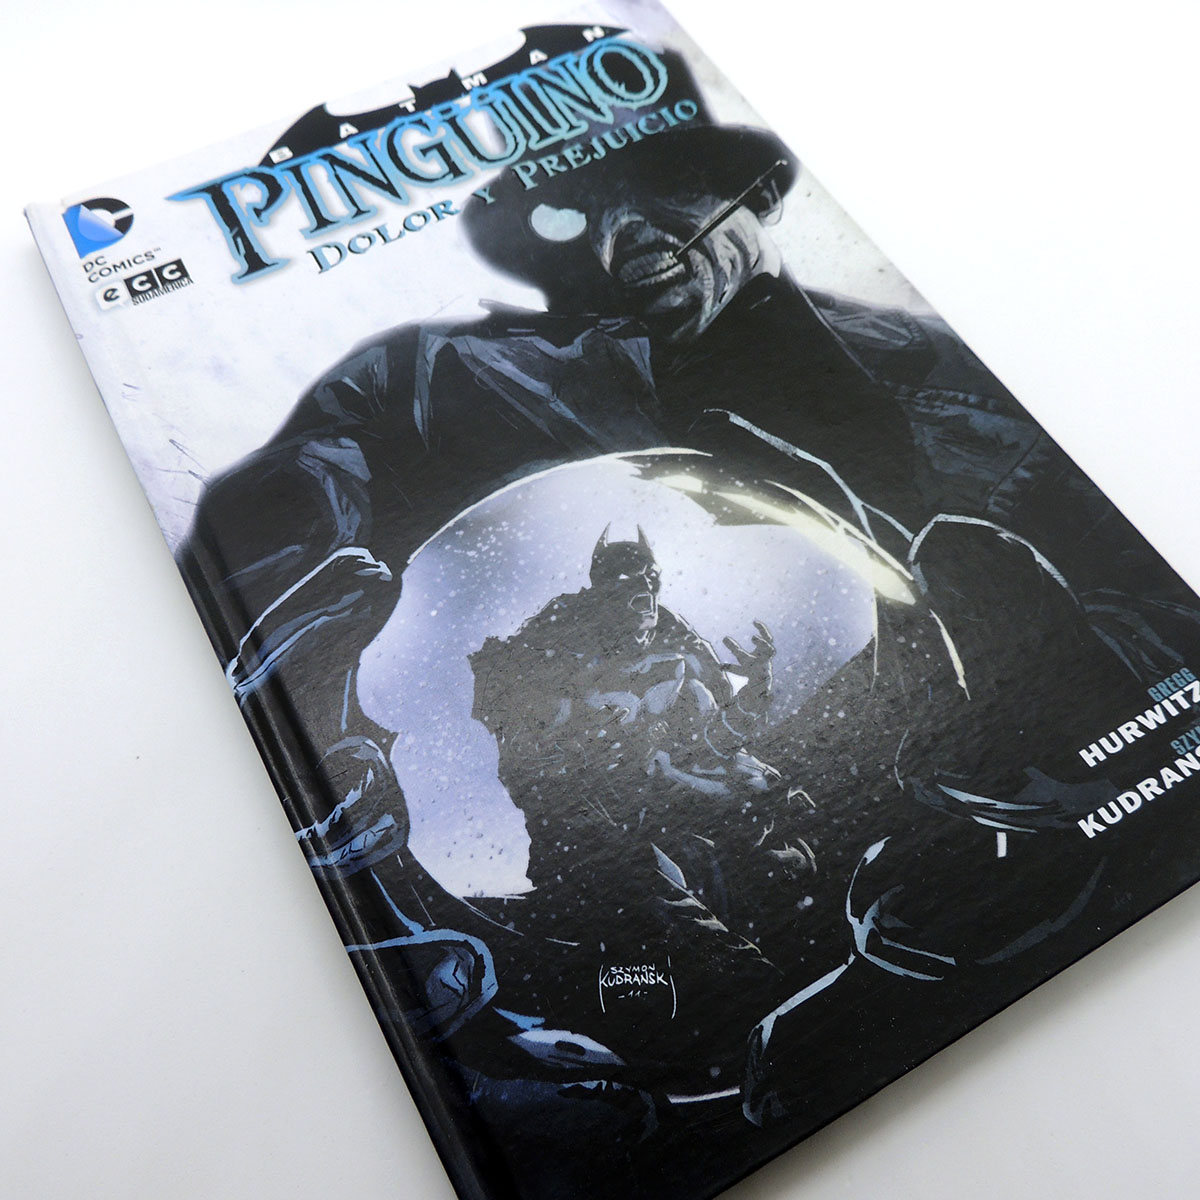 Batman Pingüino Dolor y Prejuicio Hardcover ECC DC Comics - Madtoyz